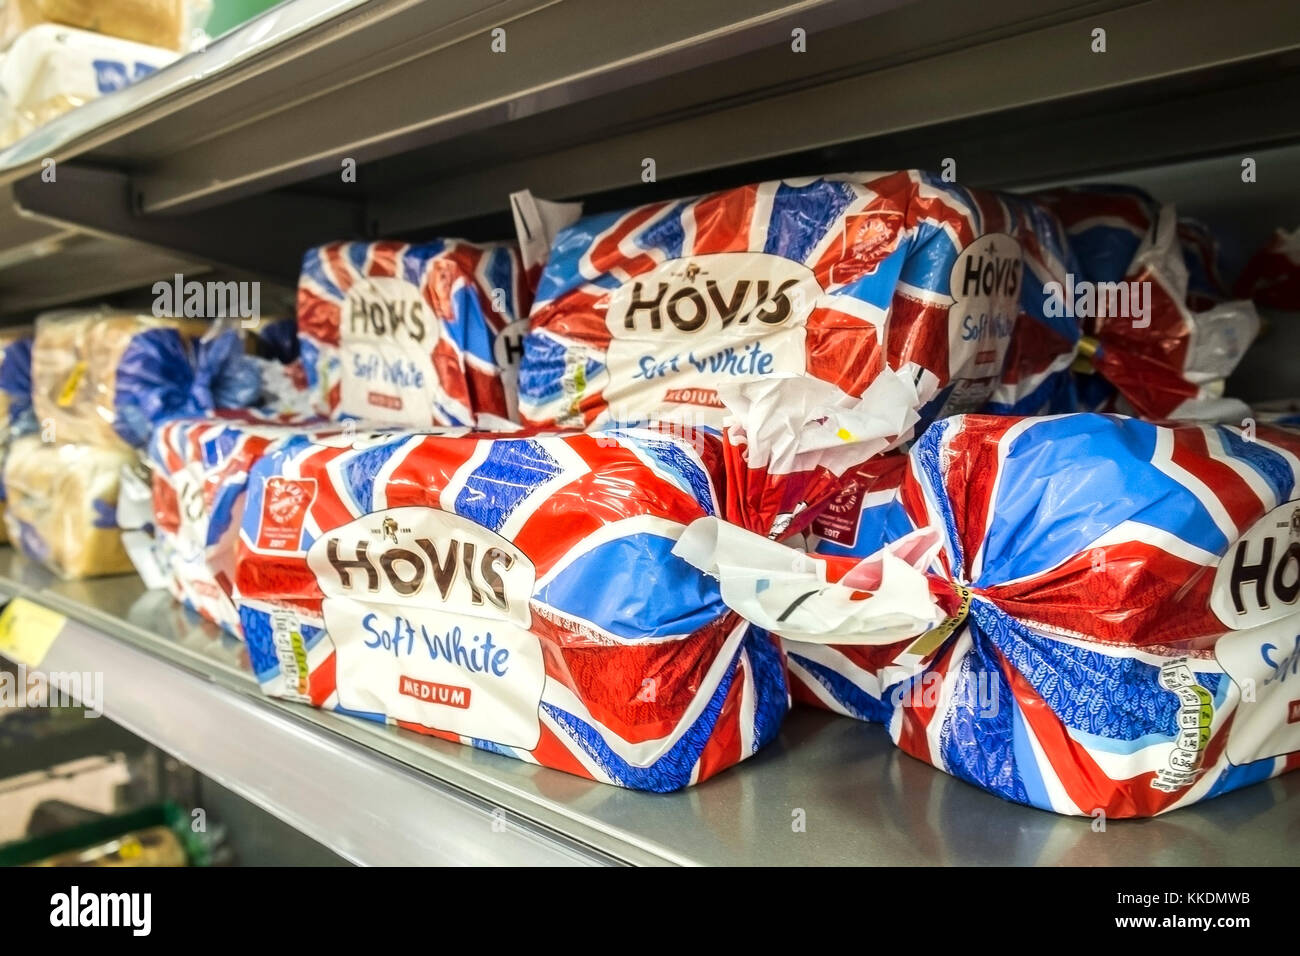 Brote von Hovis Weisses Brot in Union Flag Union Jack Farben gewickelt. Stockfoto